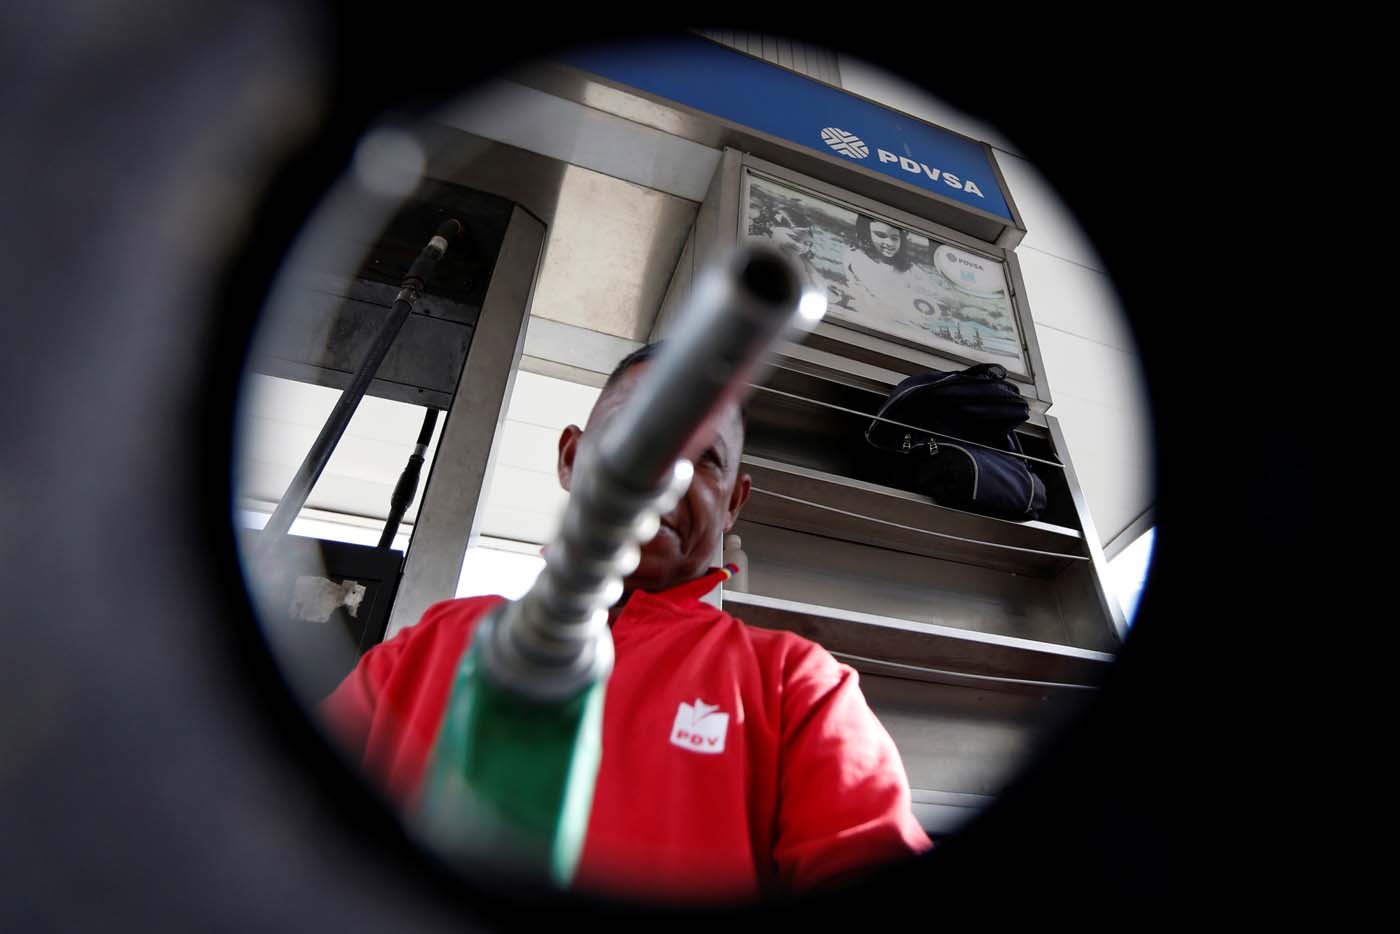 Escasez de gasolina en varios estados por fallas en refinerías y protestas